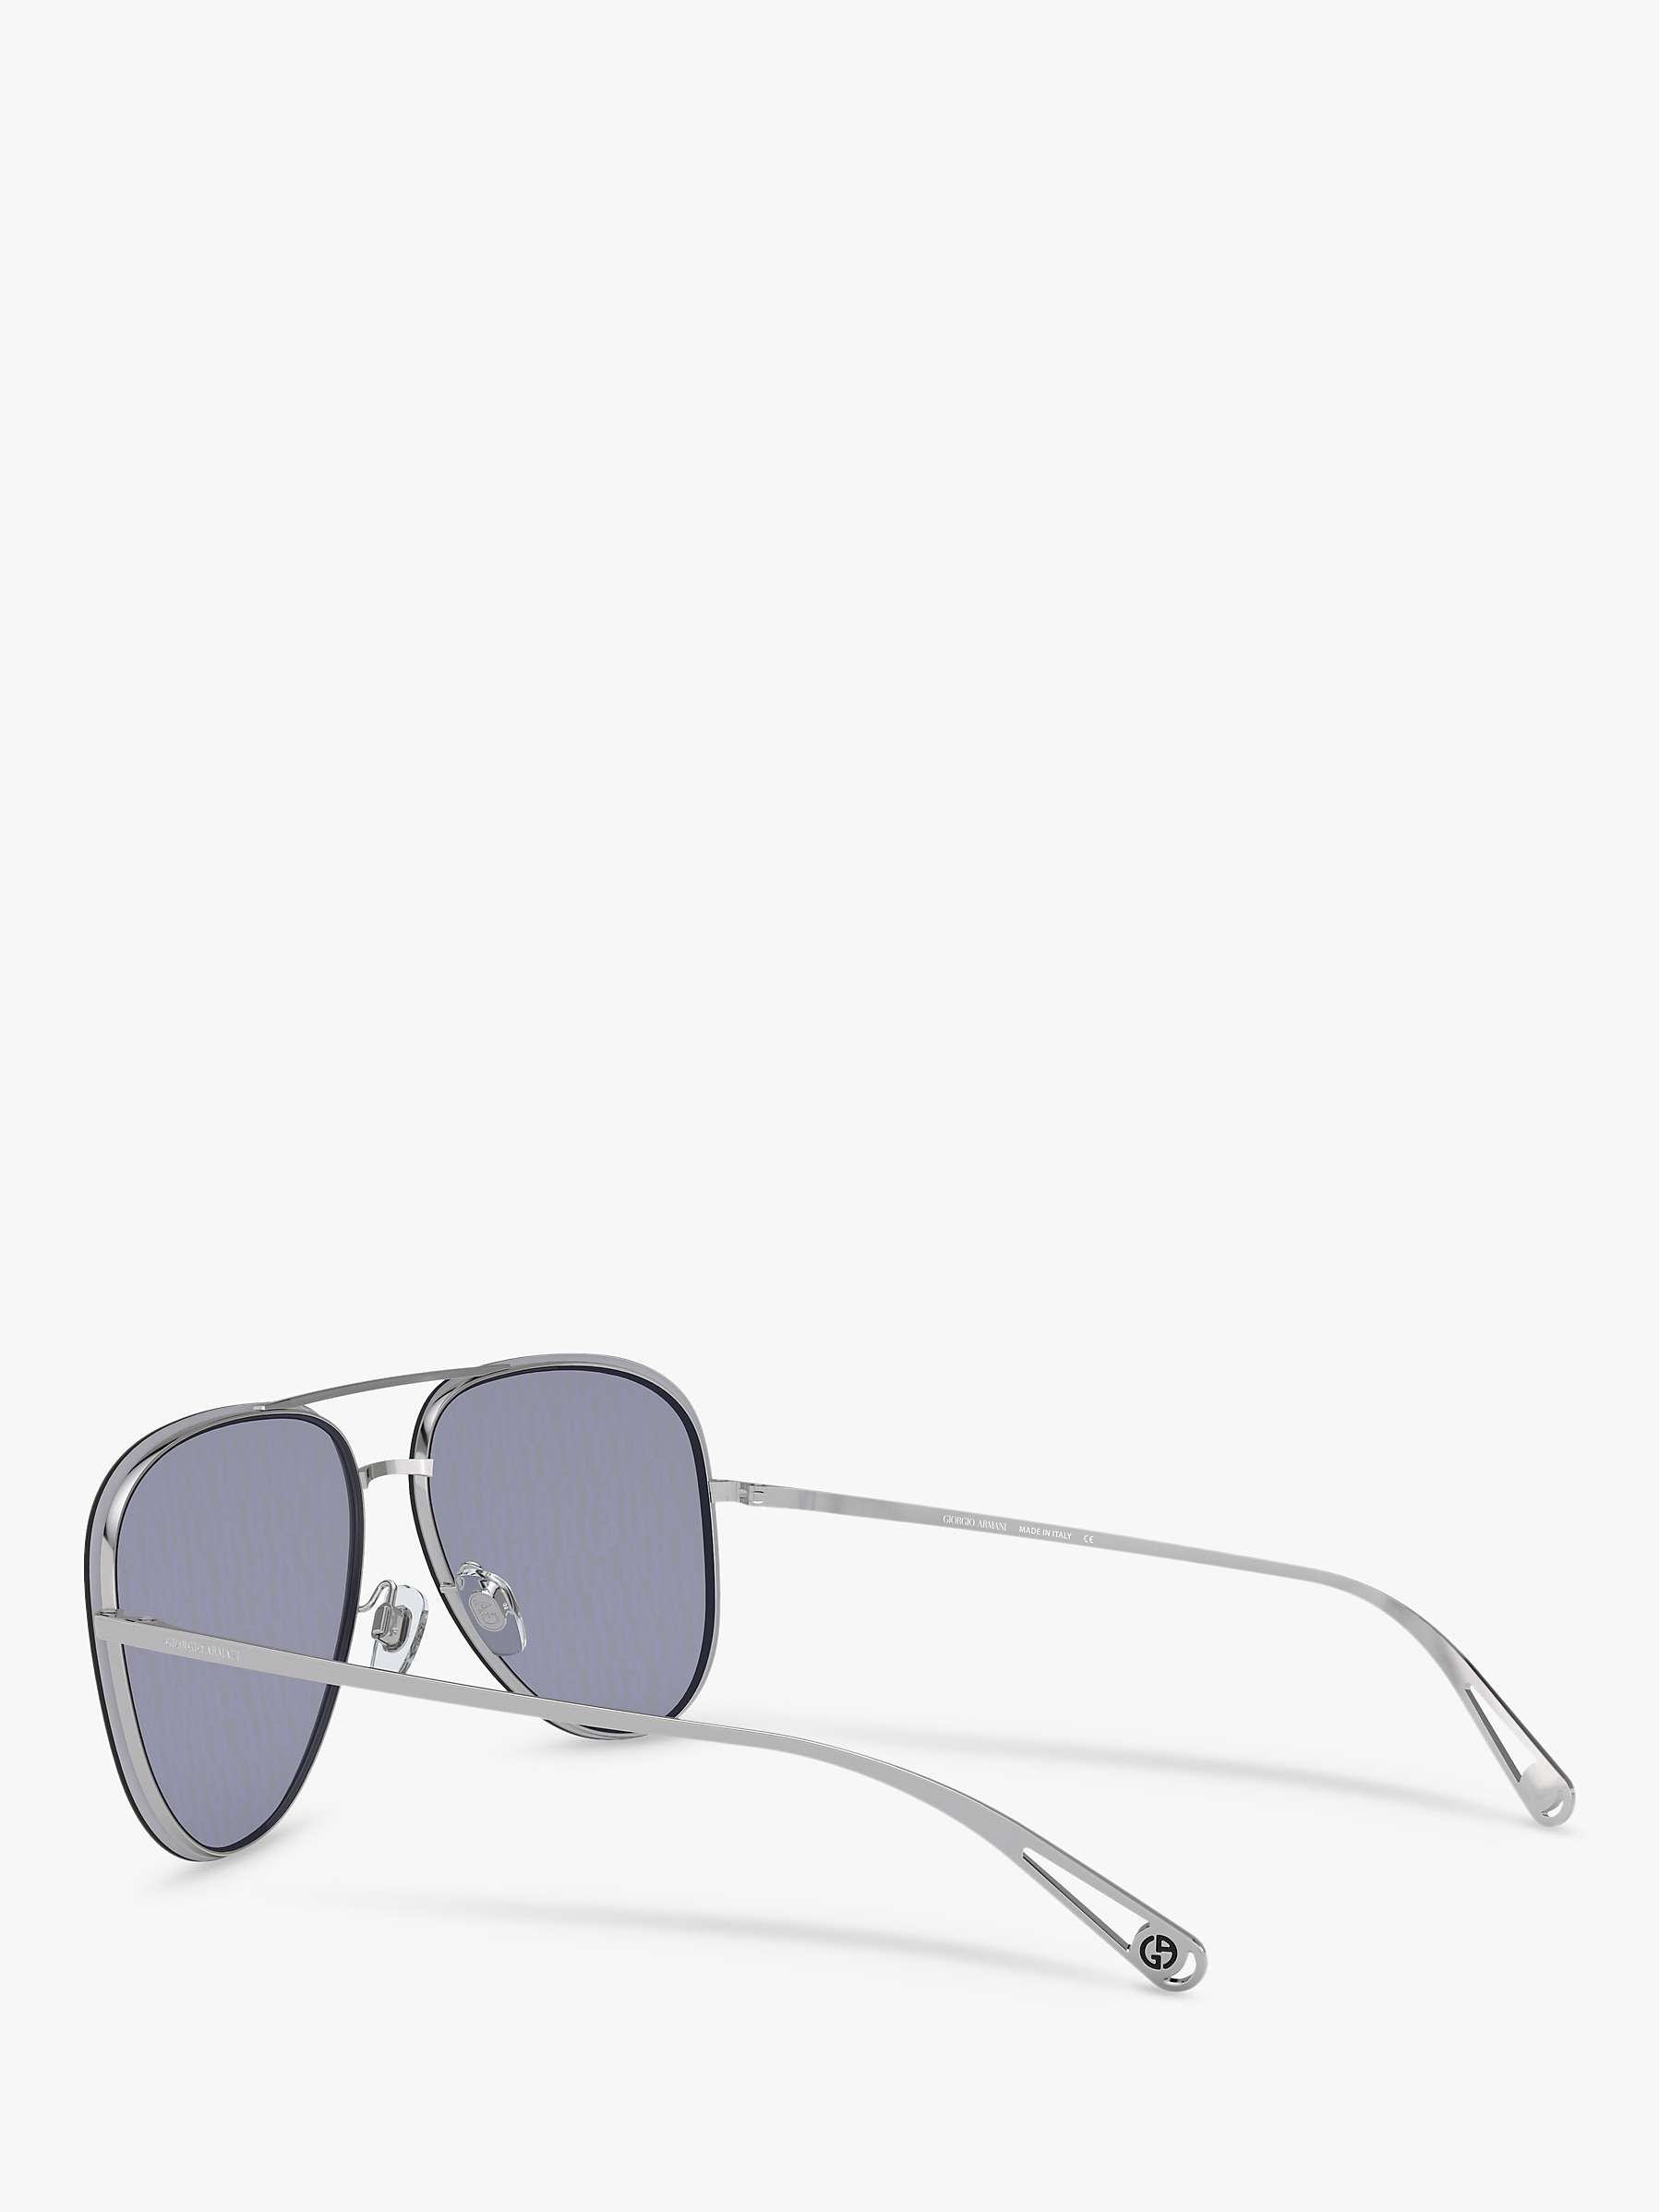 Buy Giorgio Armani AR6084 Women's Aviator Sunglasses, Silver/Blue Online at johnlewis.com